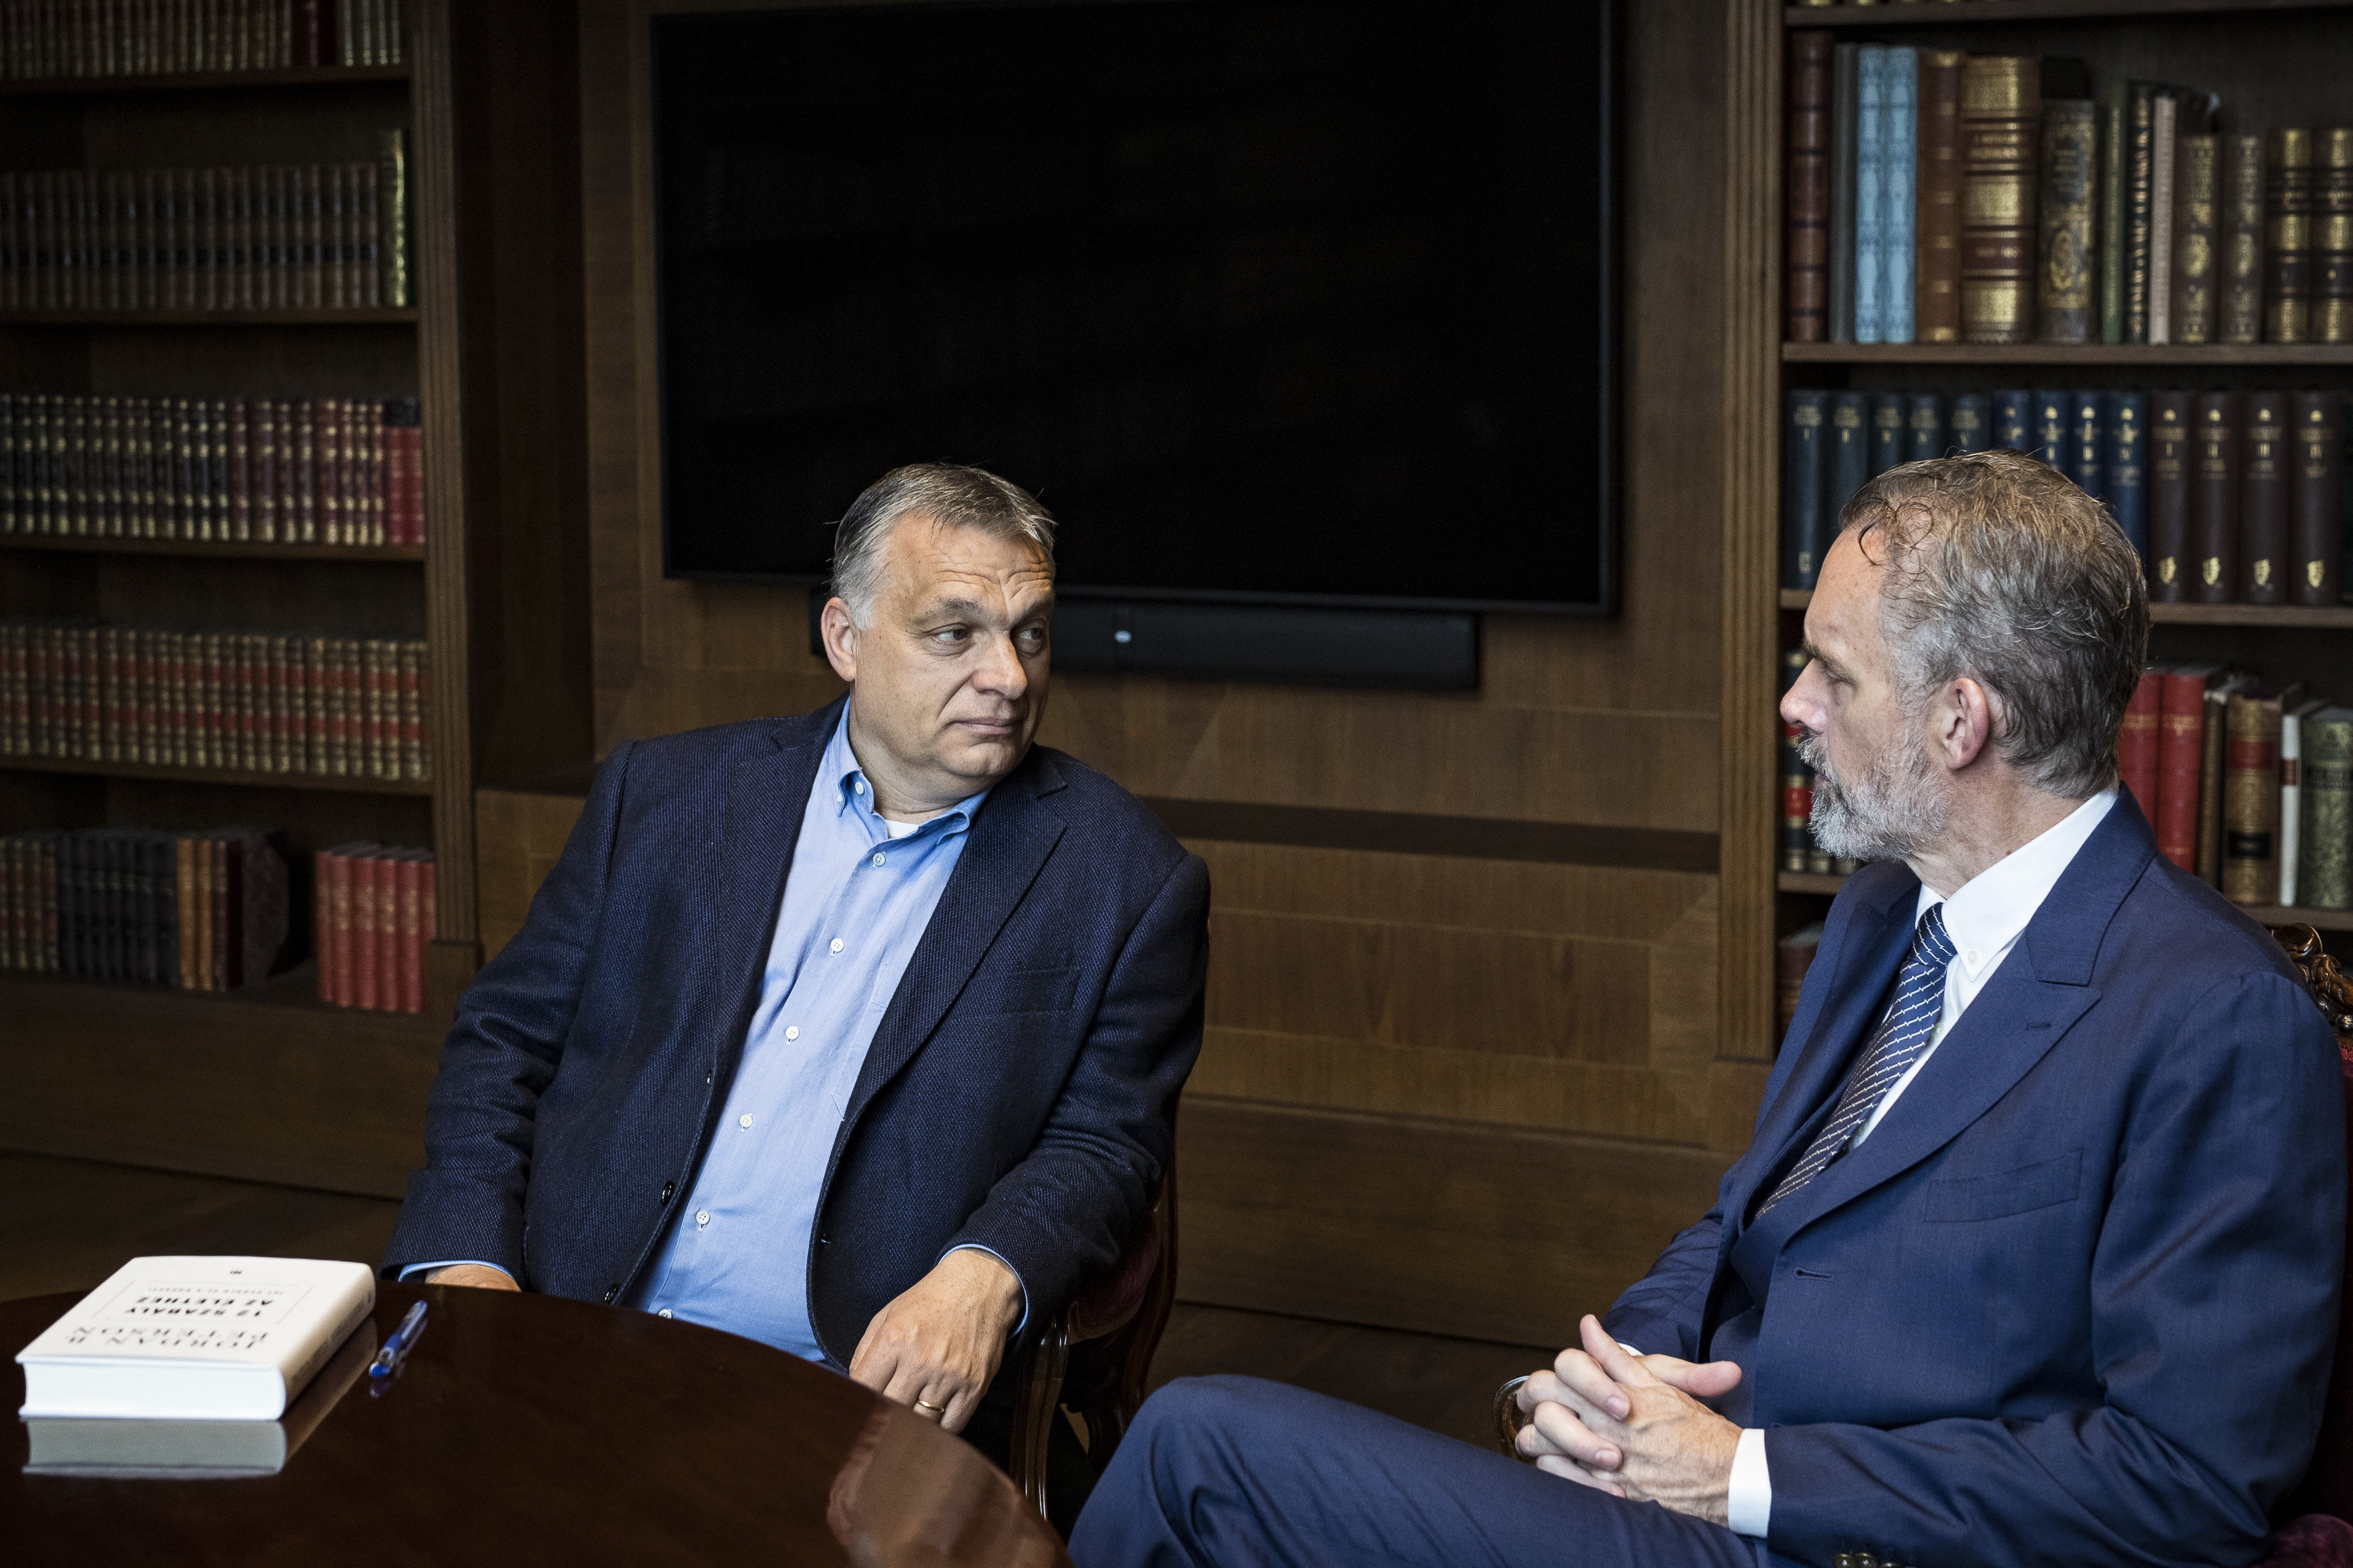 Ismert kanadai életvezetési tanácsadóval találkozott Orbán Viktor miniszterelnök